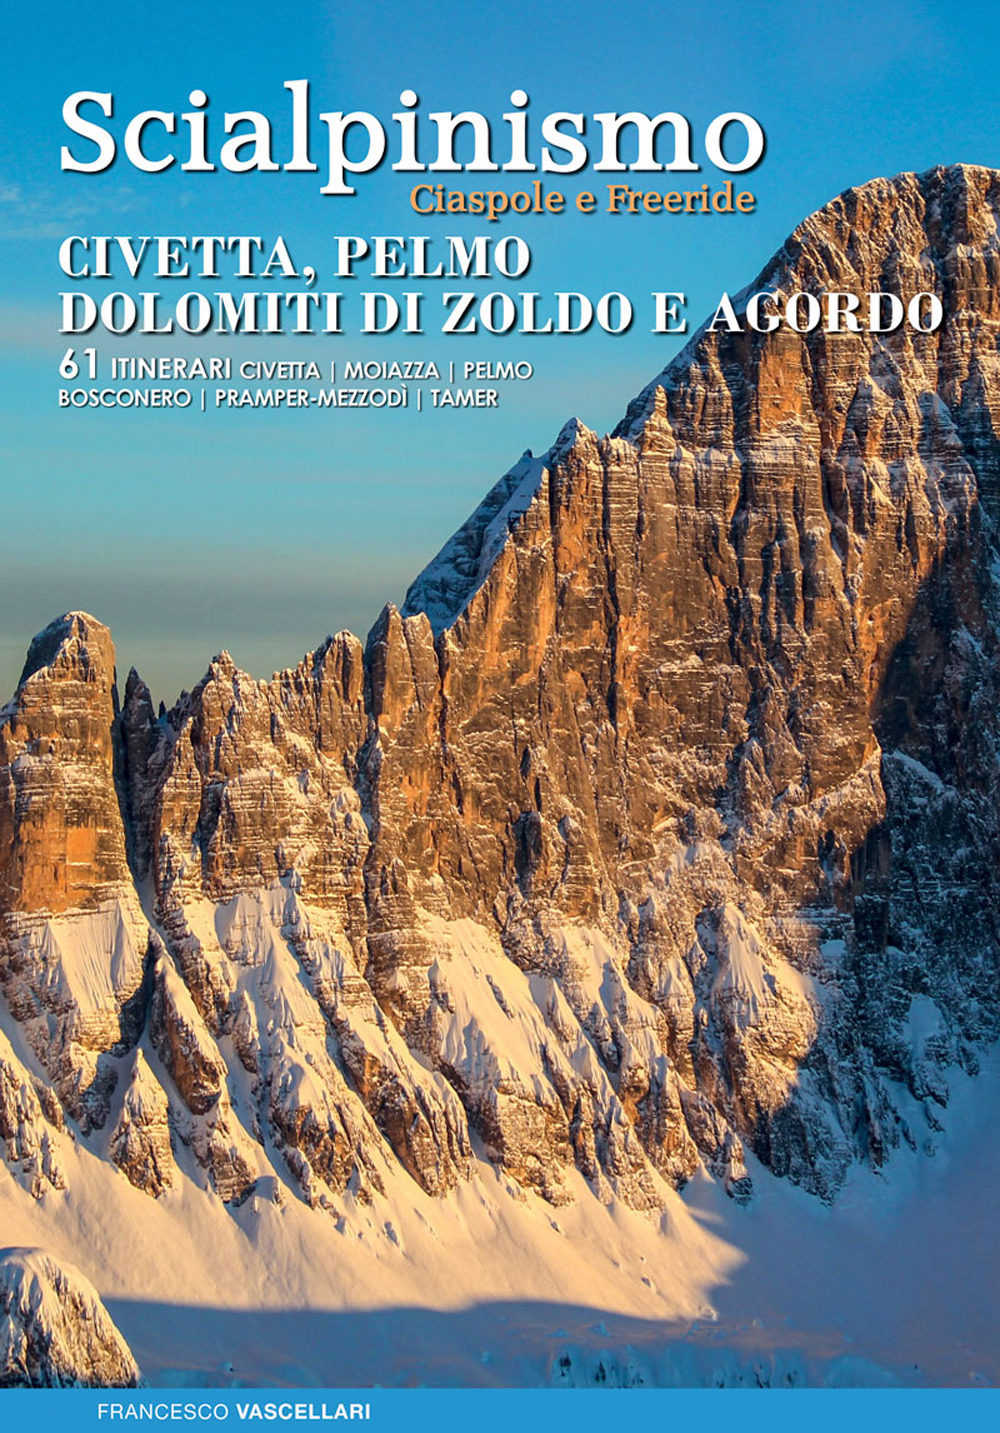 Image of Scialpinismo. Civetta, Pelmo, Dolomiti di Zoldo, Agordo